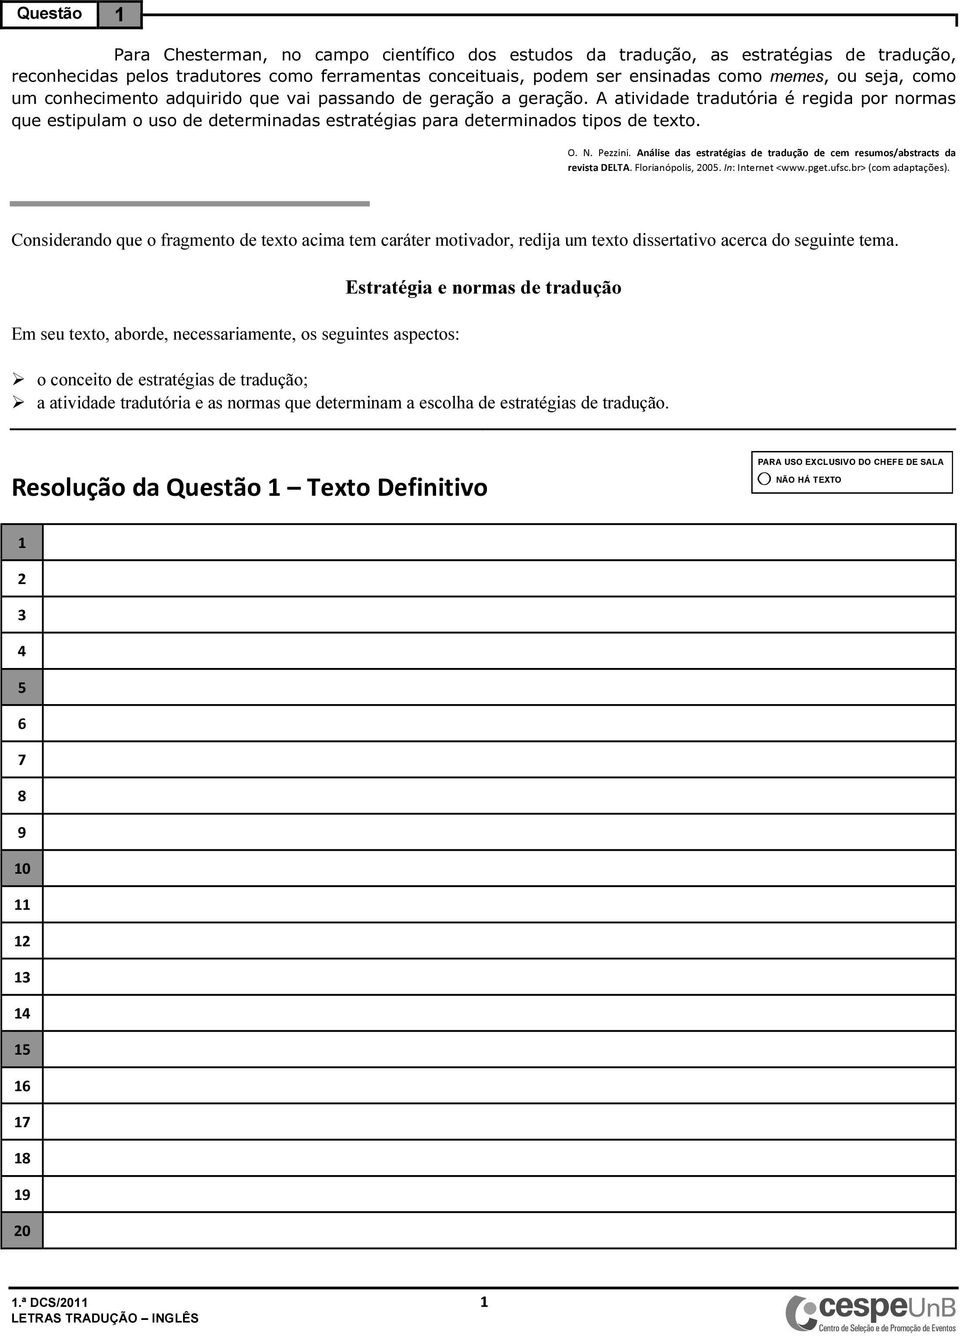 Pezzini. Análise das estratégias de tradução de cem resumos/abstracts da revista DELTA. Florianópolis, 00. In: Internet <www.pget.ufsc.br> (com adaptações).